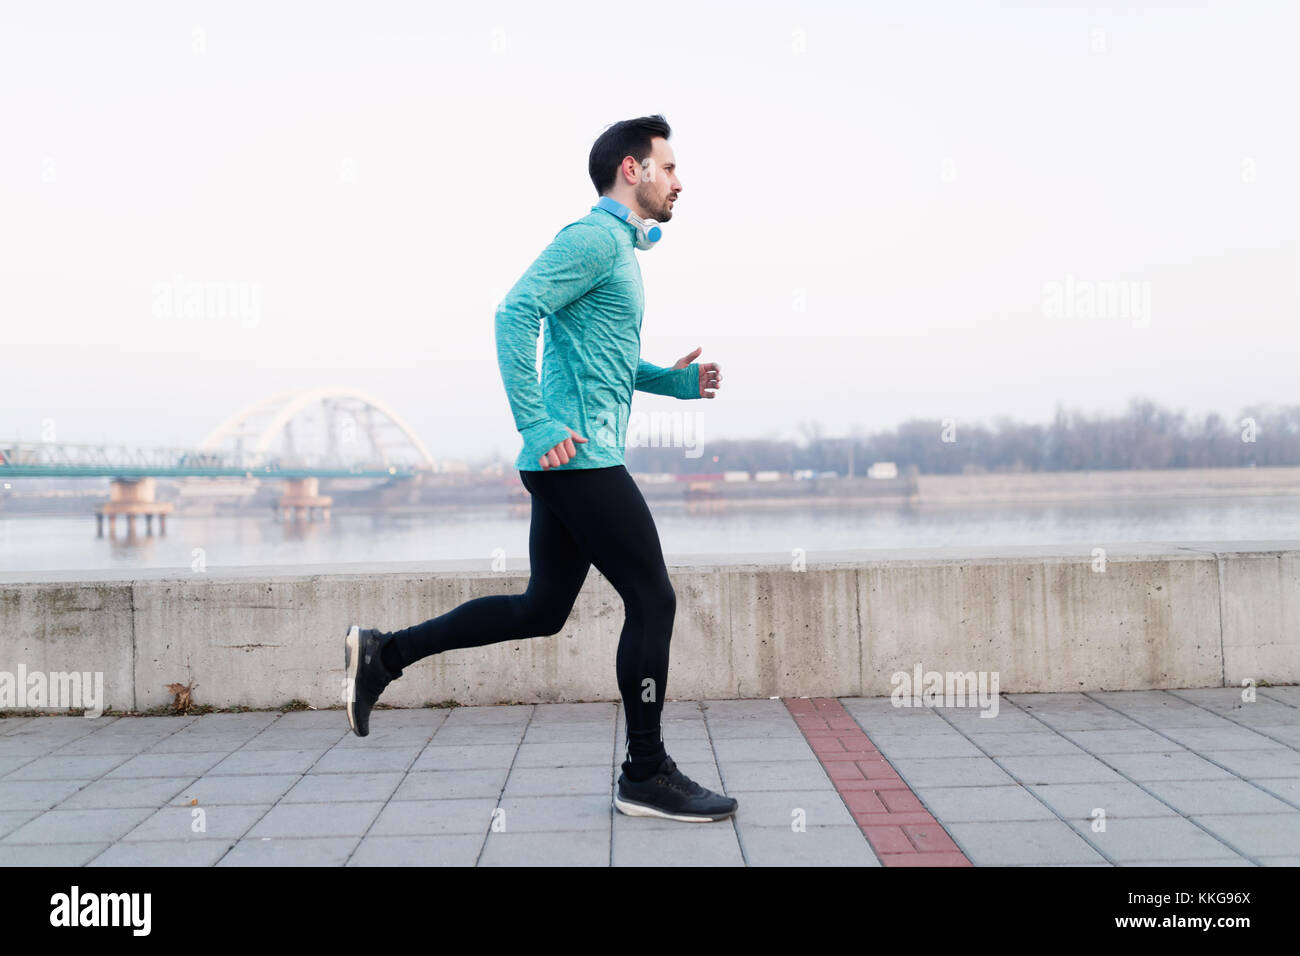 Junge fitness Mann laufen im städtischen Bereich Stockfoto